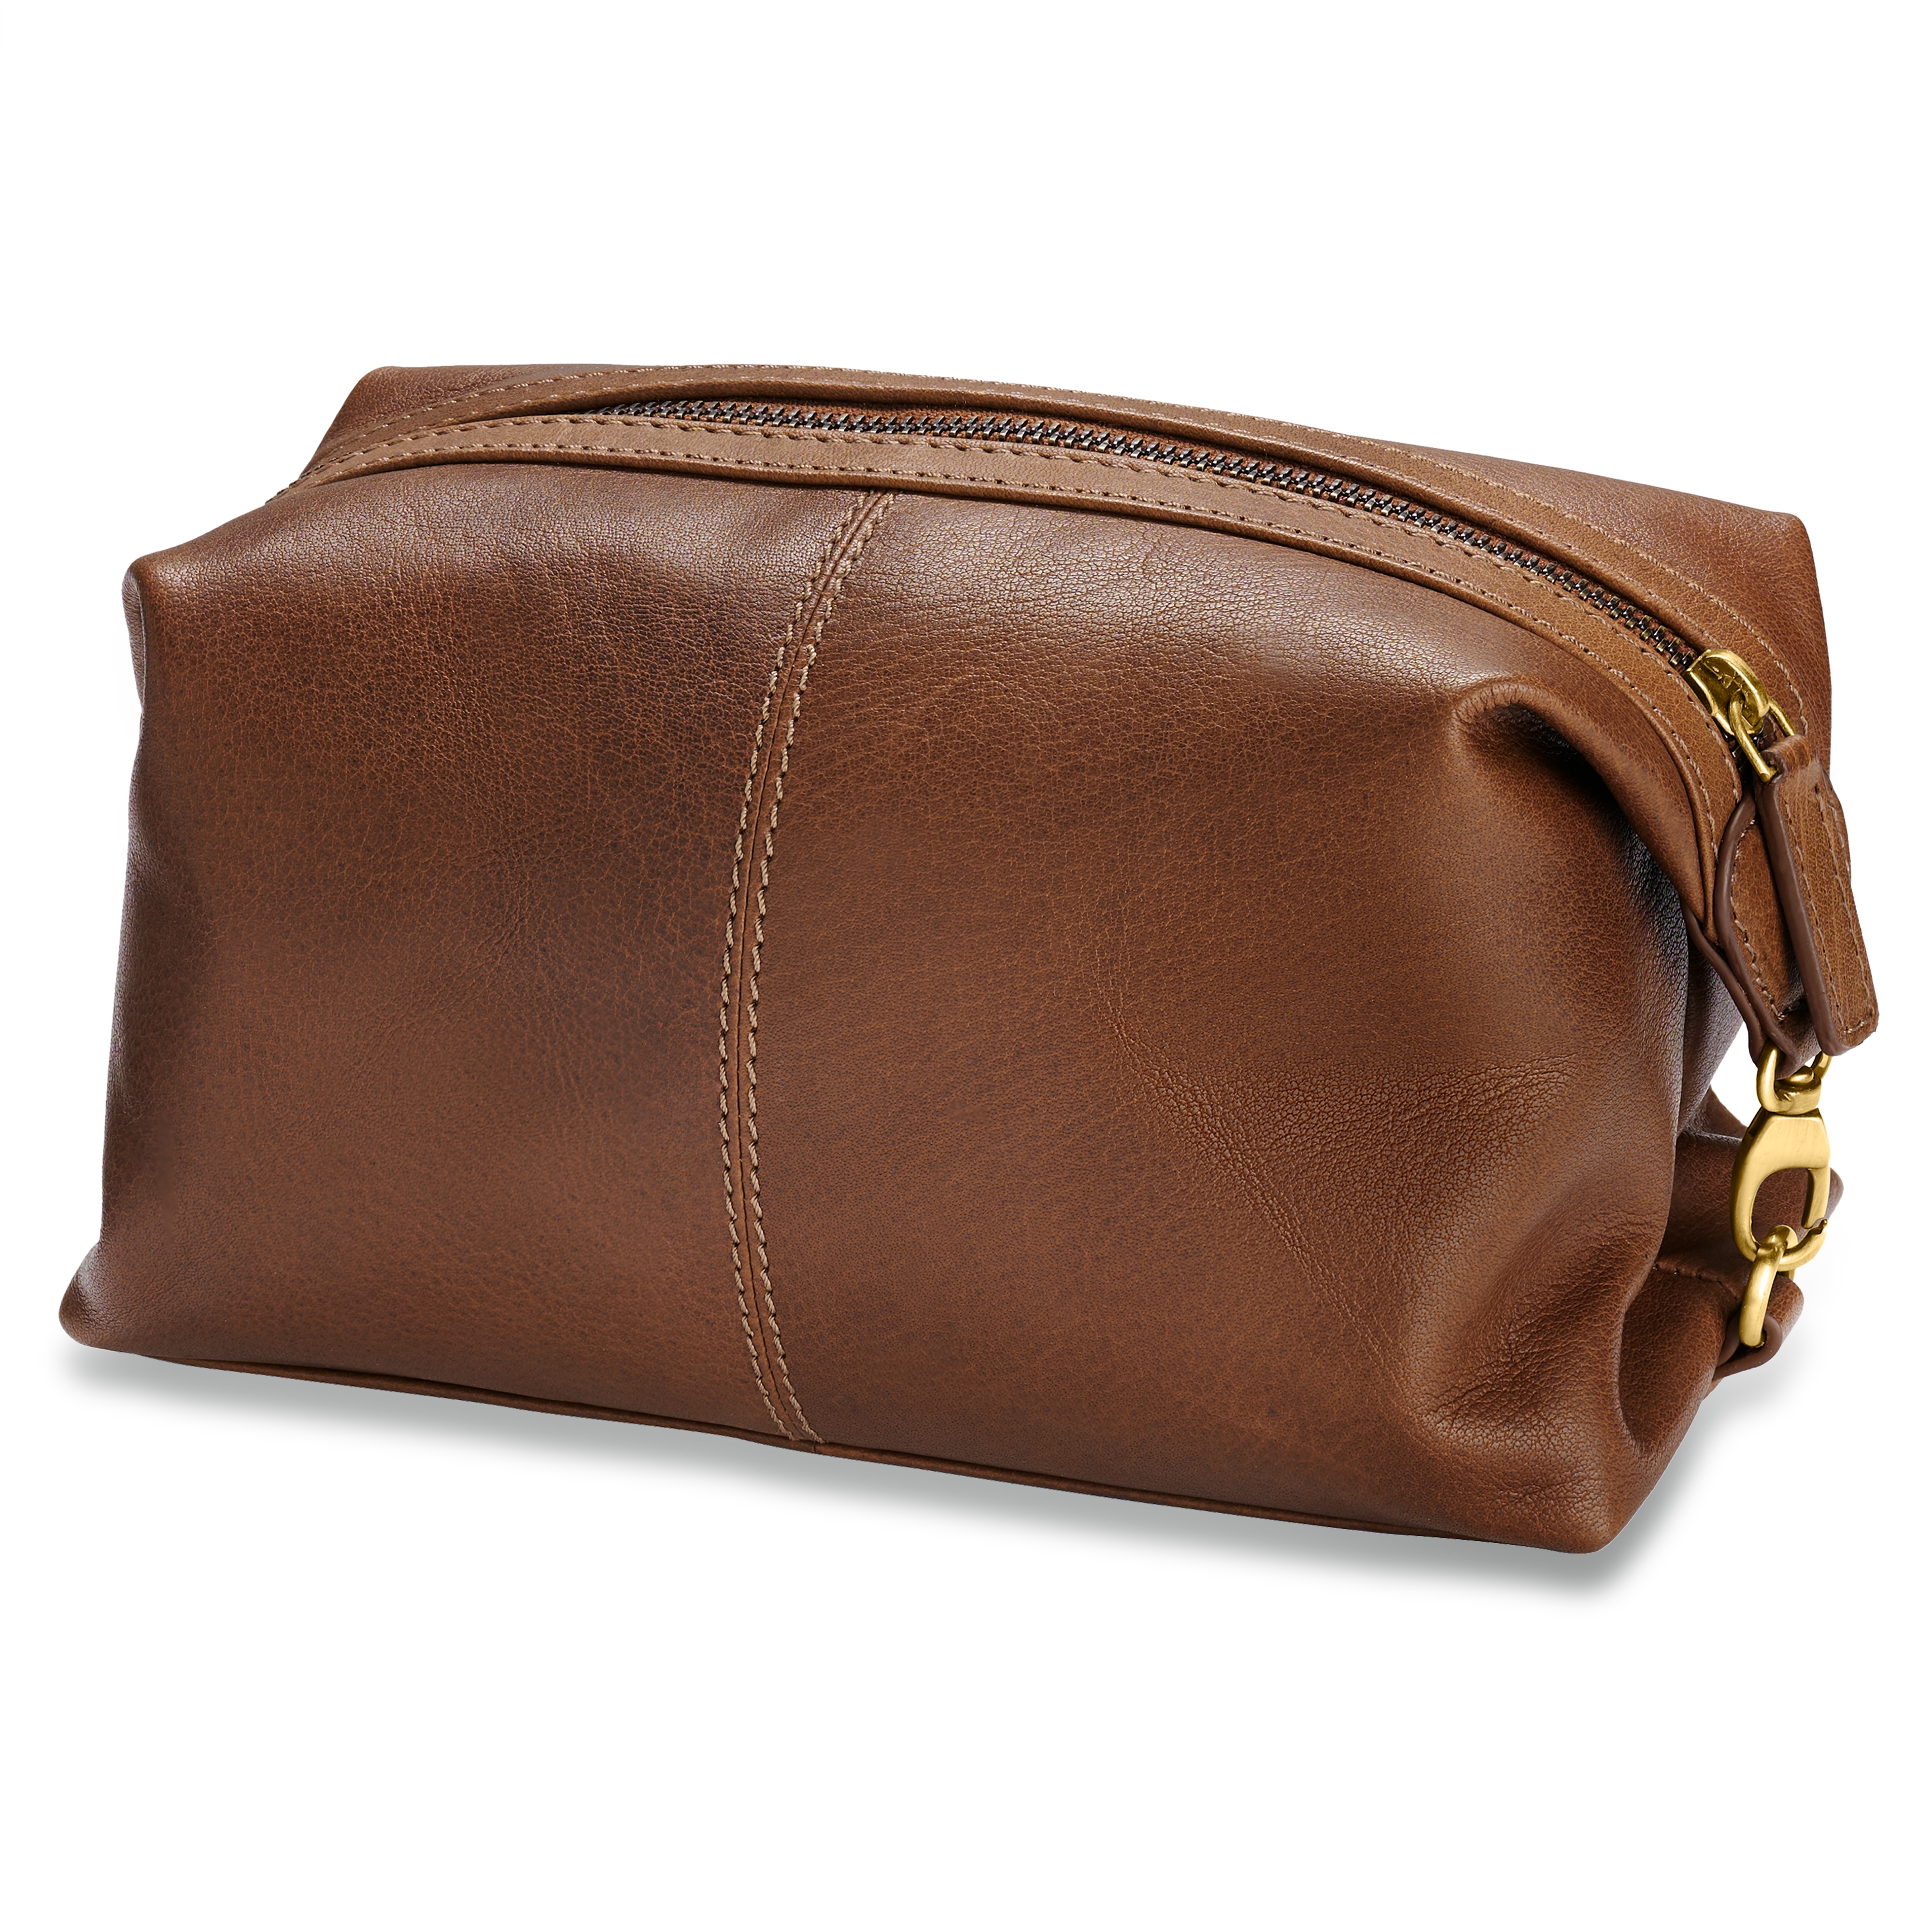 Ethan Full Grain Leather Dopp Kit | Brown Toiletry Bag